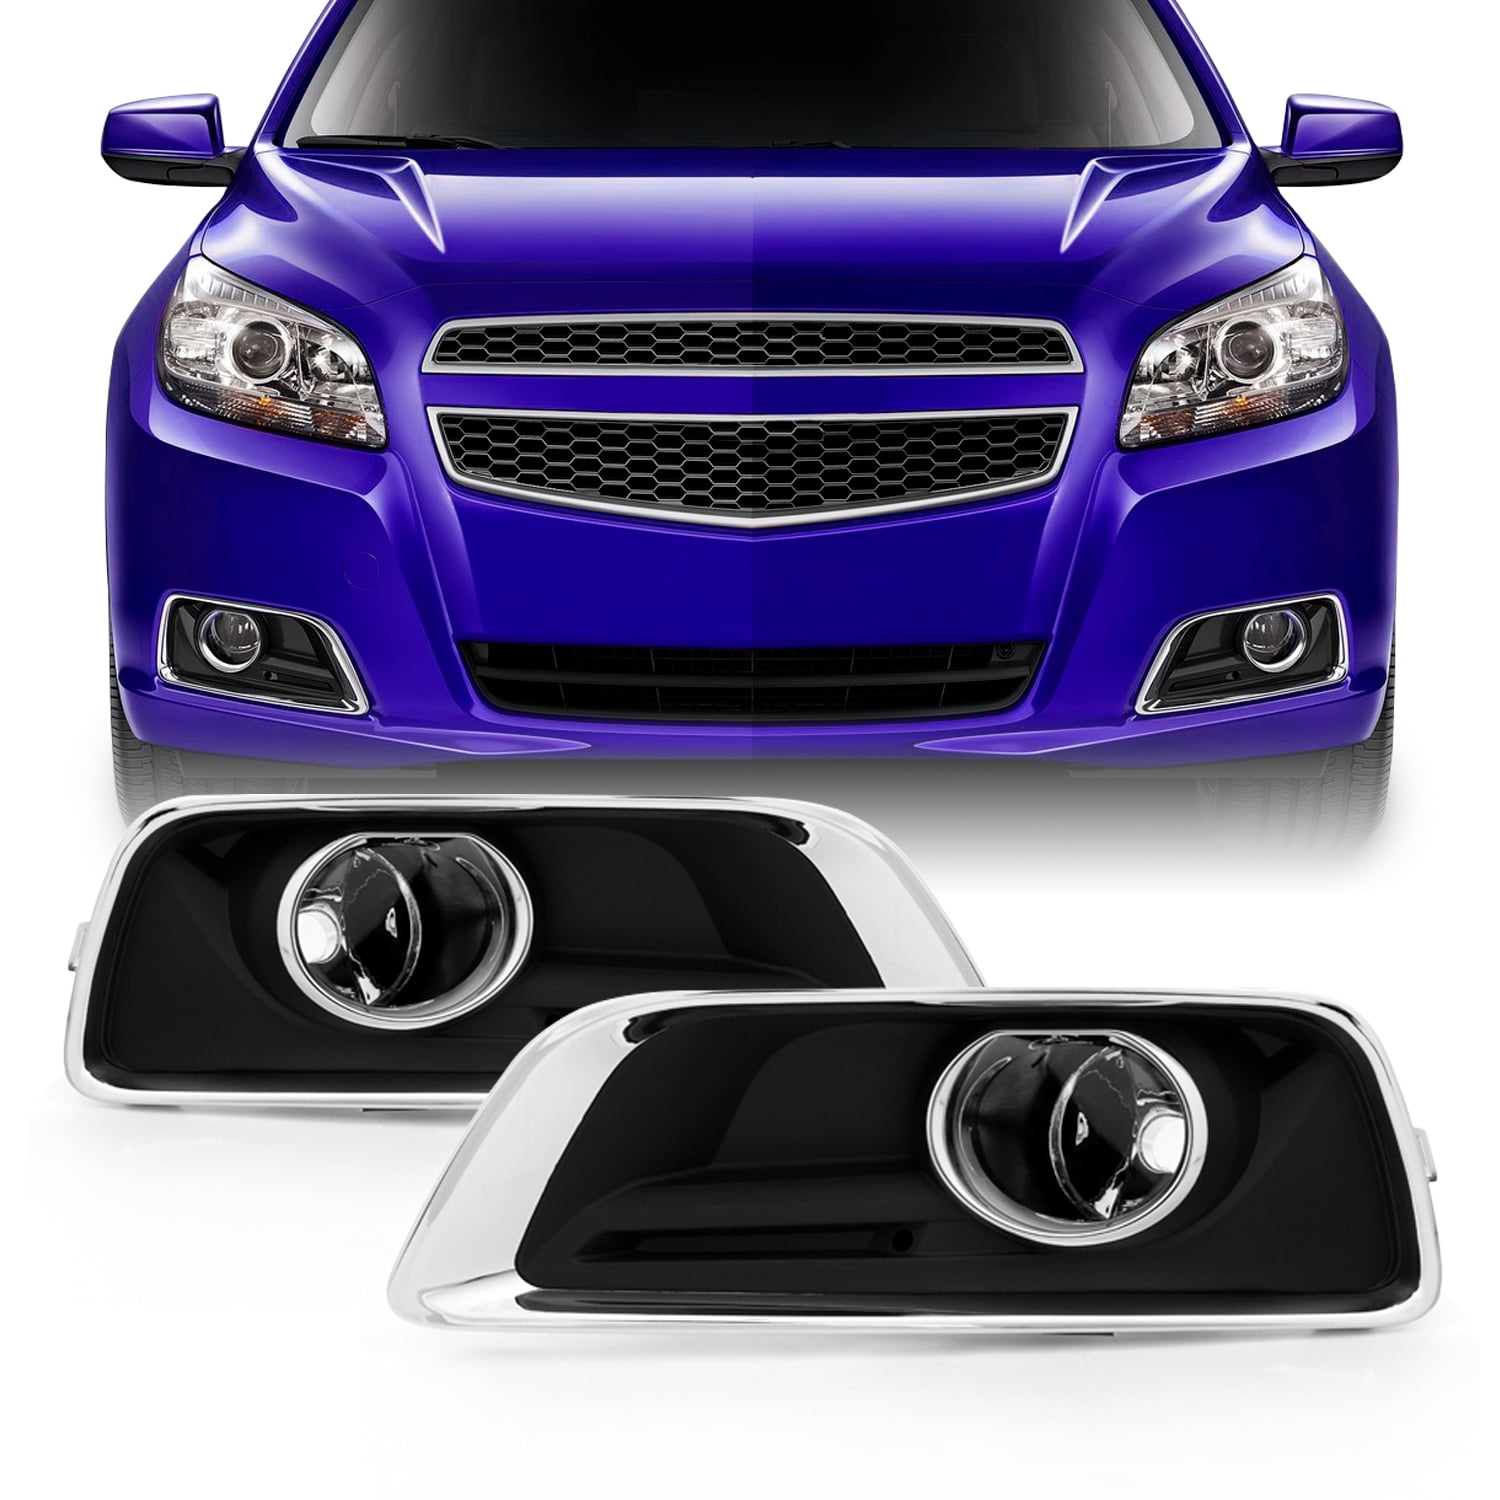 LED Bumper Fog Light/Brake Warning/Turn Signal For Chevrolet Malibu 2014-2015 